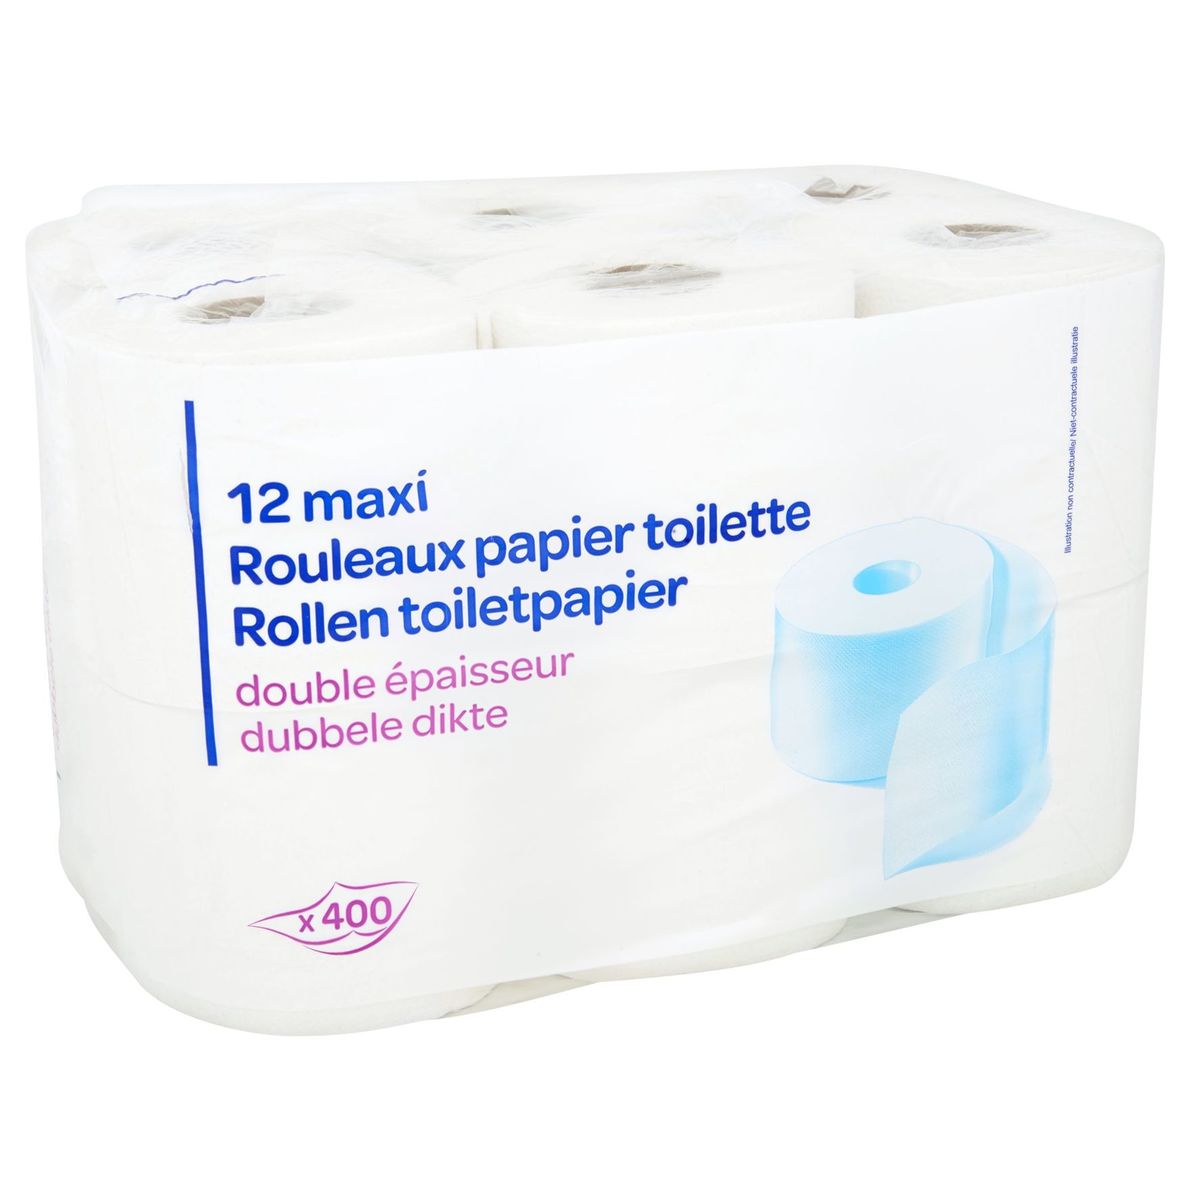 12 Maxi Rollen Toiletpapier